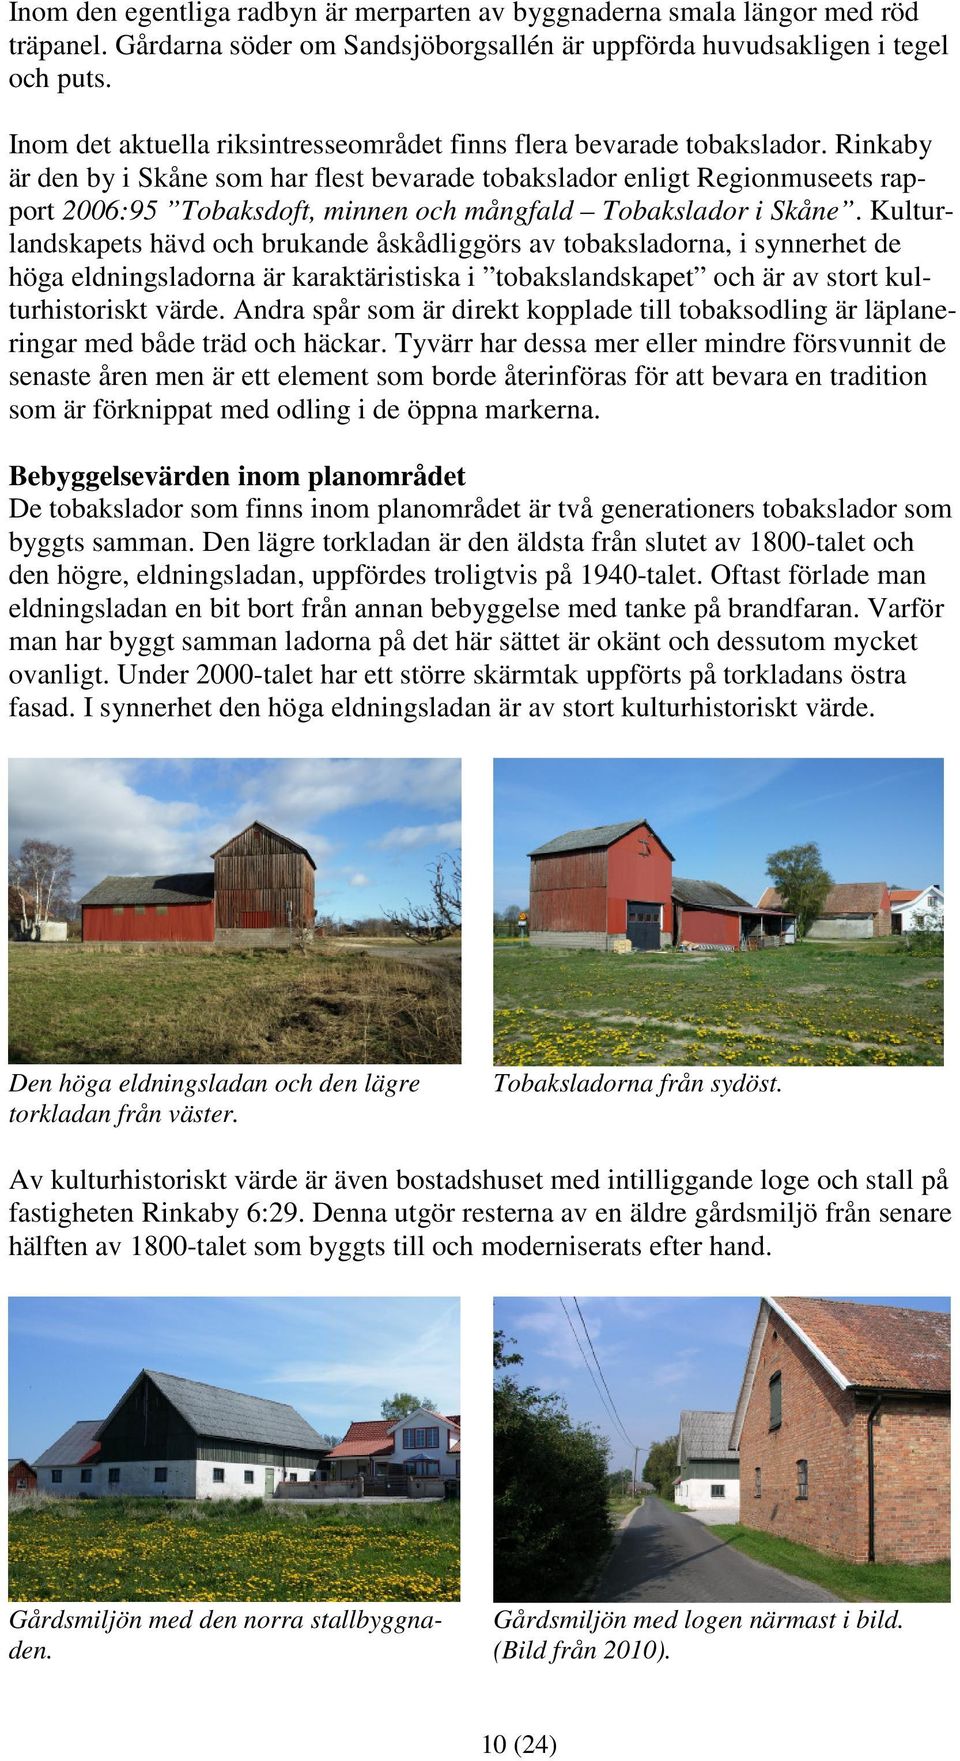 Rinkaby är den by i Skåne som har flest bevarade tobakslador enligt Regionmuseets rapport 2006:95 Tobaksdoft, minnen och mångfald Tobakslador i Skåne.